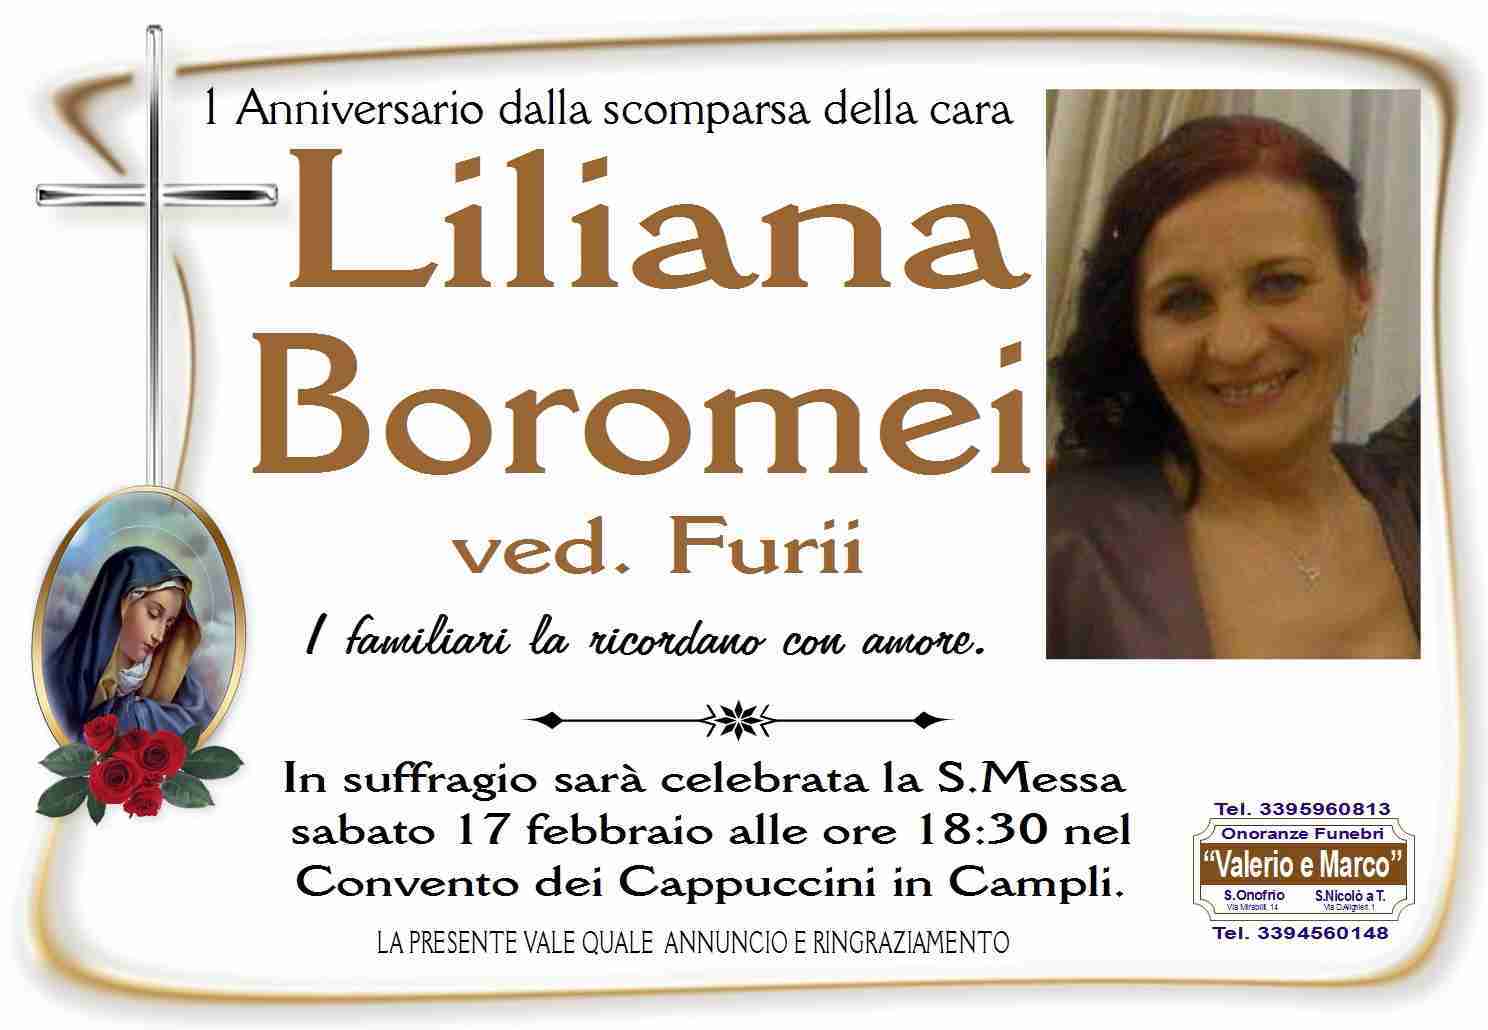 Liliana Boromei